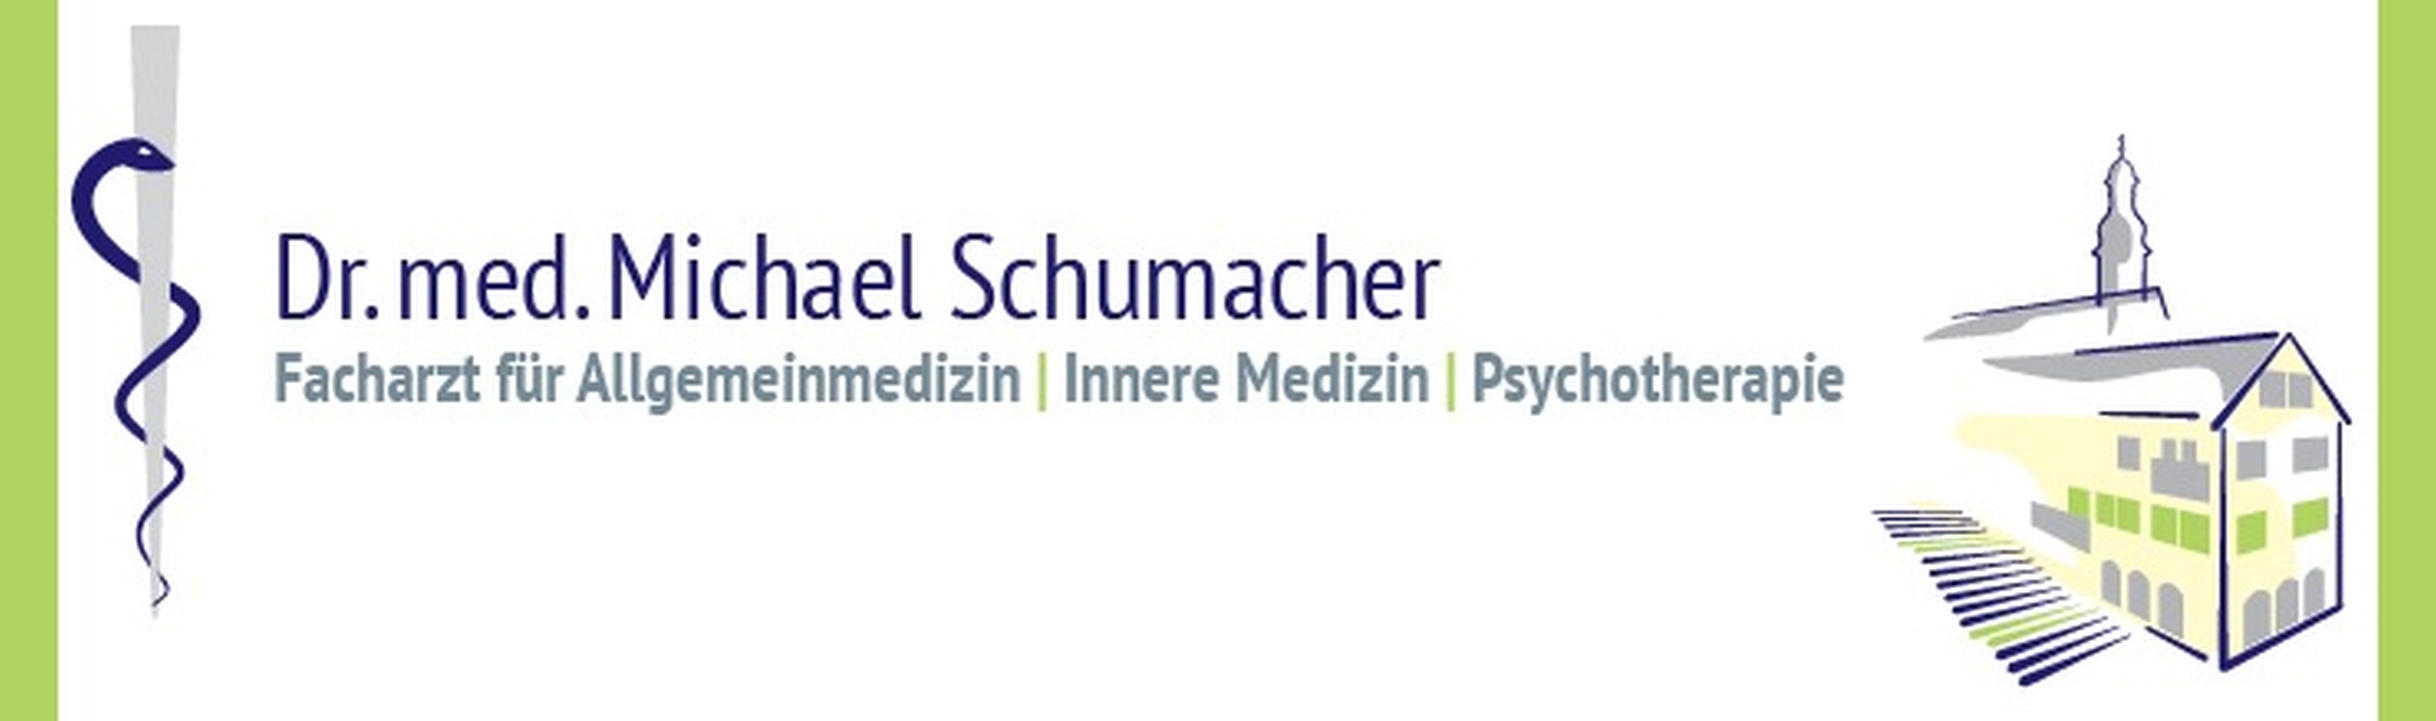 Logo Dr. med. Michael Schumacher - Facharzt für Allgemeinmedizin, Innere Medizin, Psychotherapie, Psychotherapeut